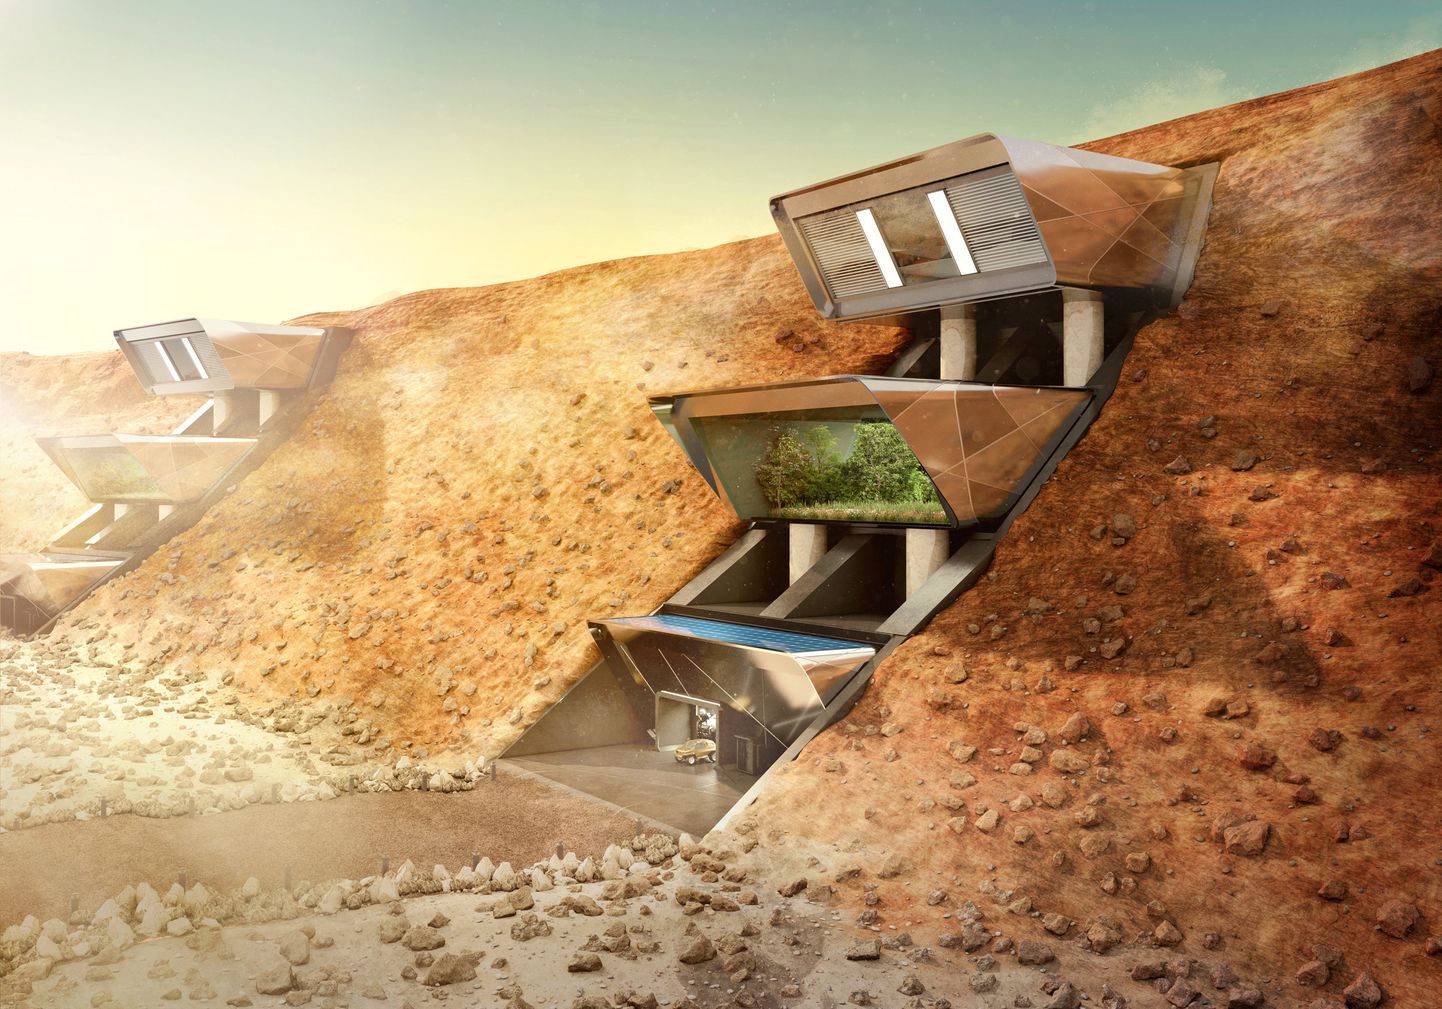 Kā varētu izskatīties mājokļi uz Marsa